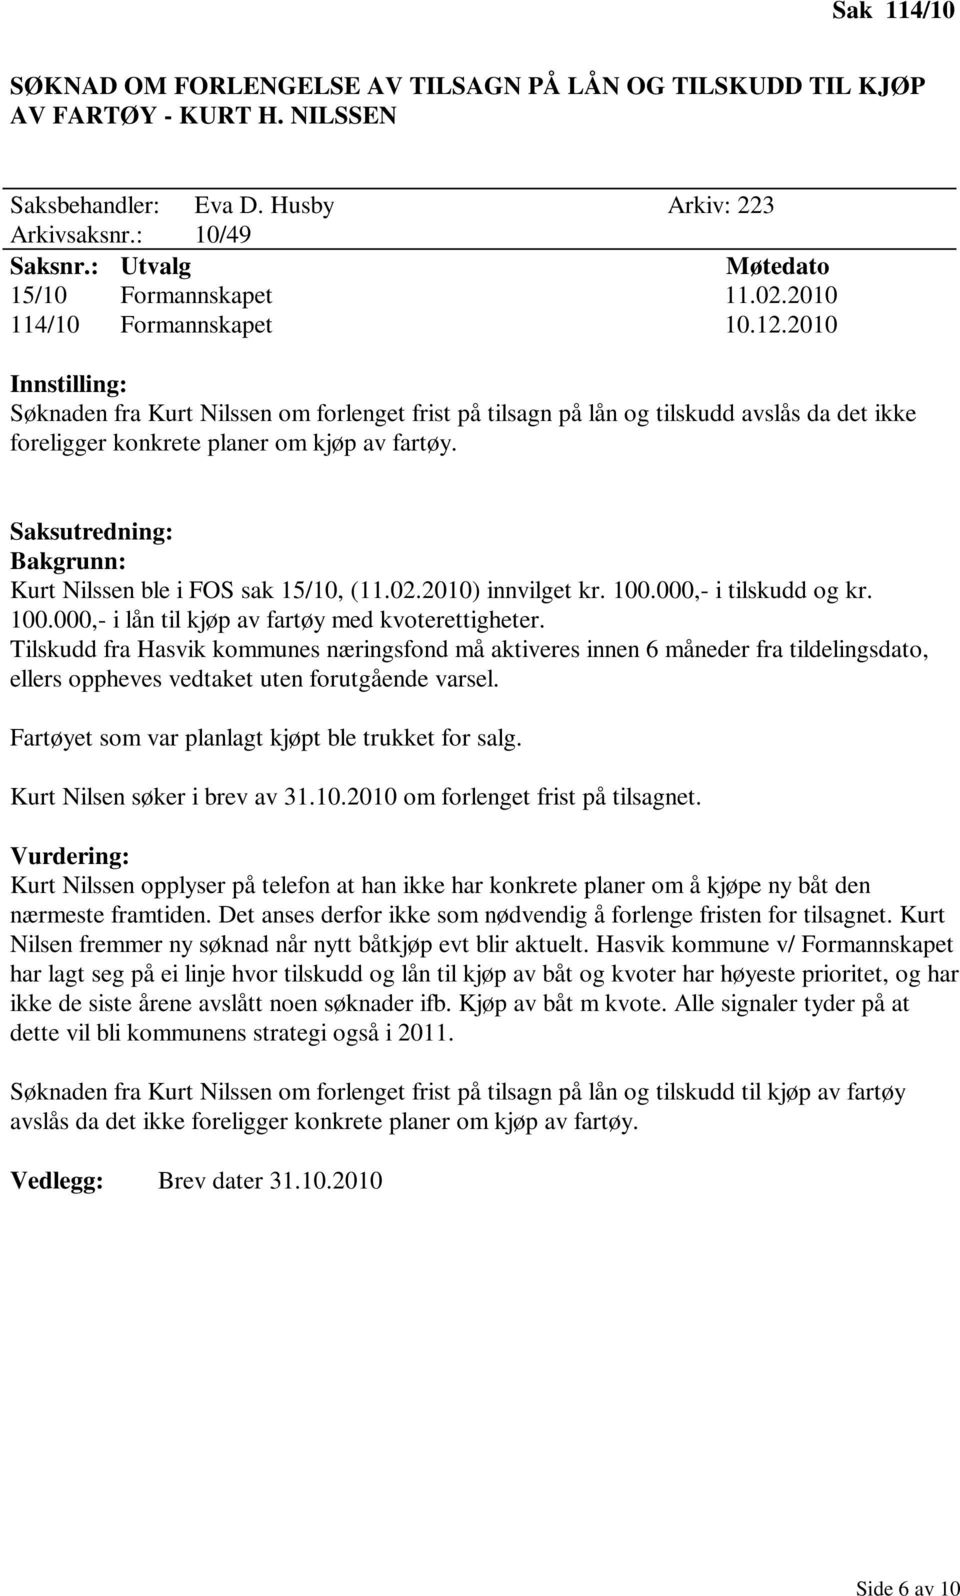 Kurt Nilssen ble i FOS sak 15/10, (11.02.2010) innvilget kr. 100.000,- i tilskudd og kr. 100.000,- i lån til kjøp av fartøy med kvoterettigheter.